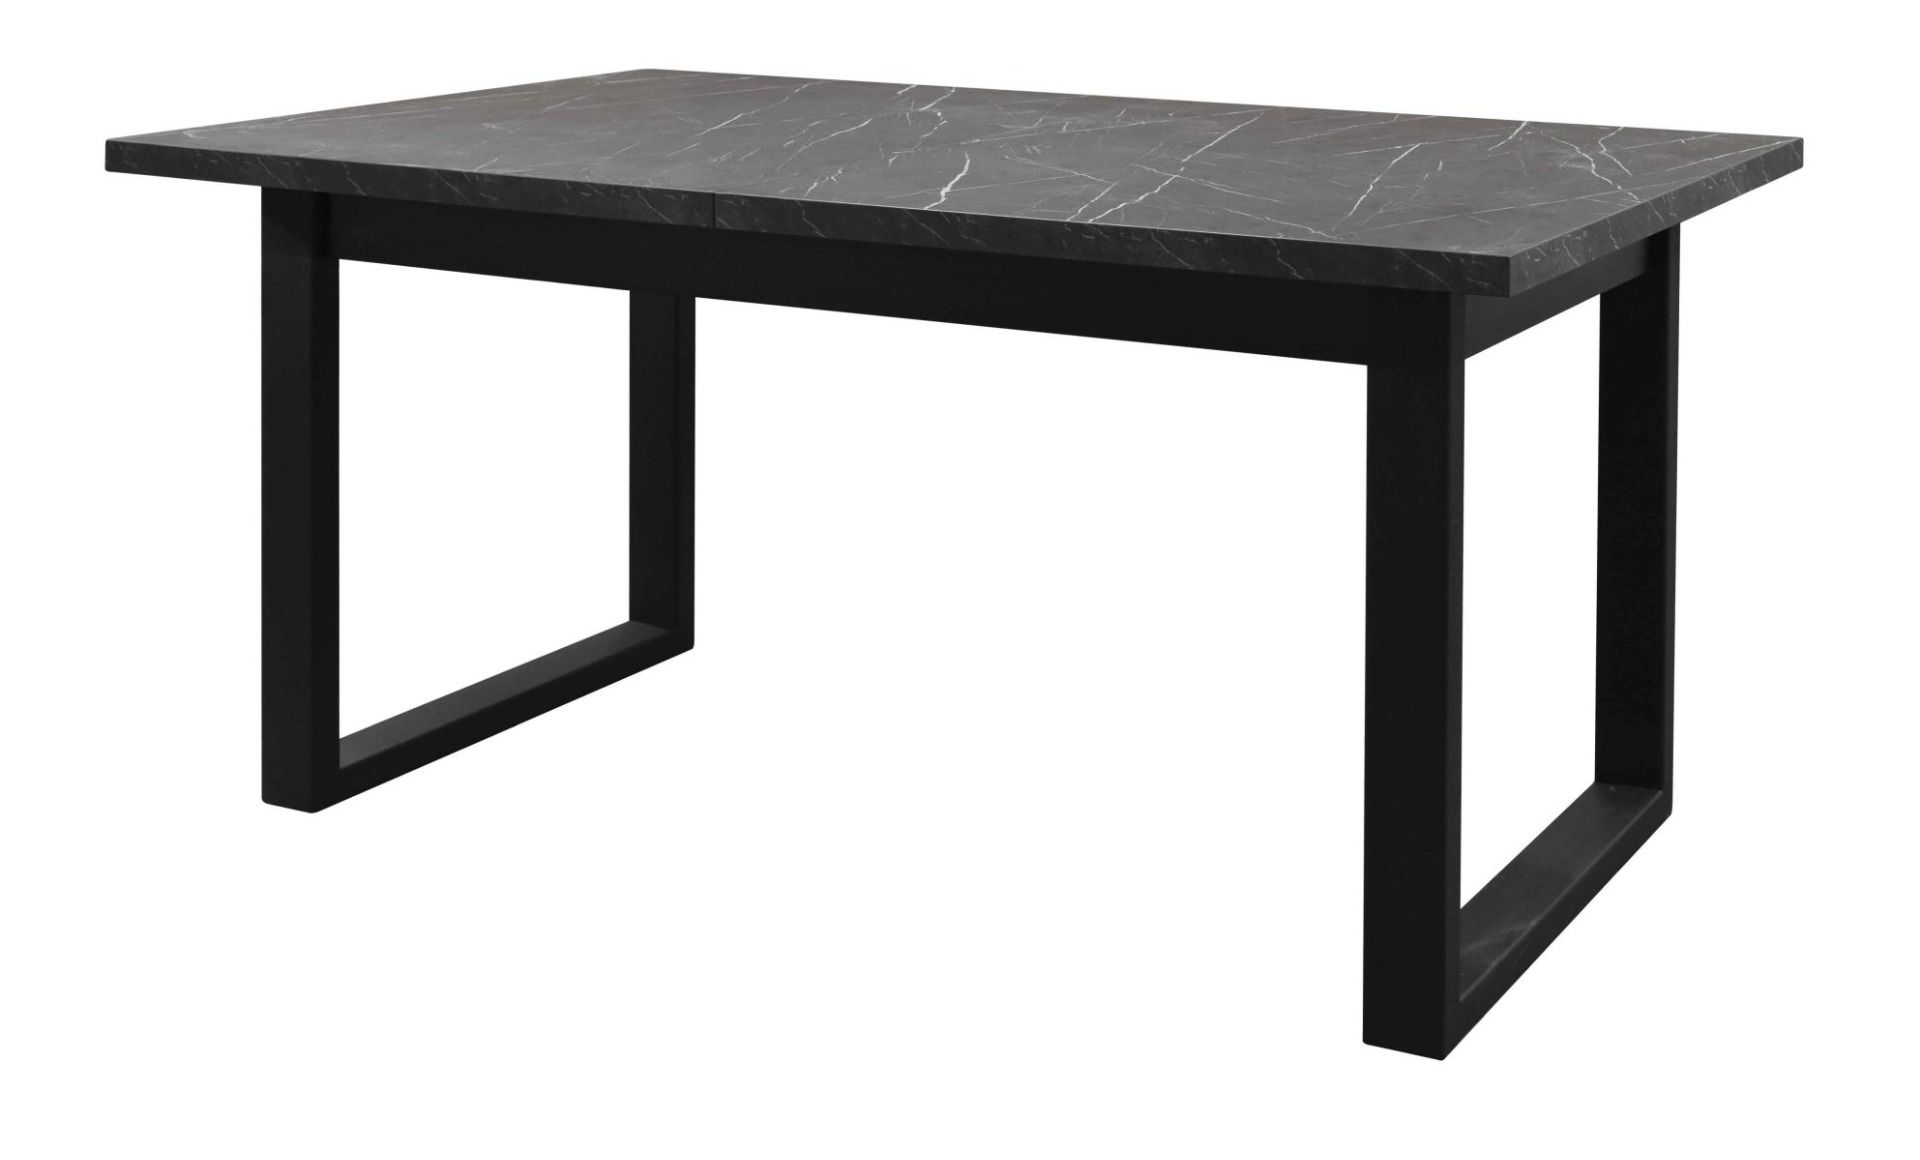 Table de salle à manger à ralonge Ourense 05, couleur : Marbre noir / Noir - dimensions : 160-240 x 90 cm (l x p)